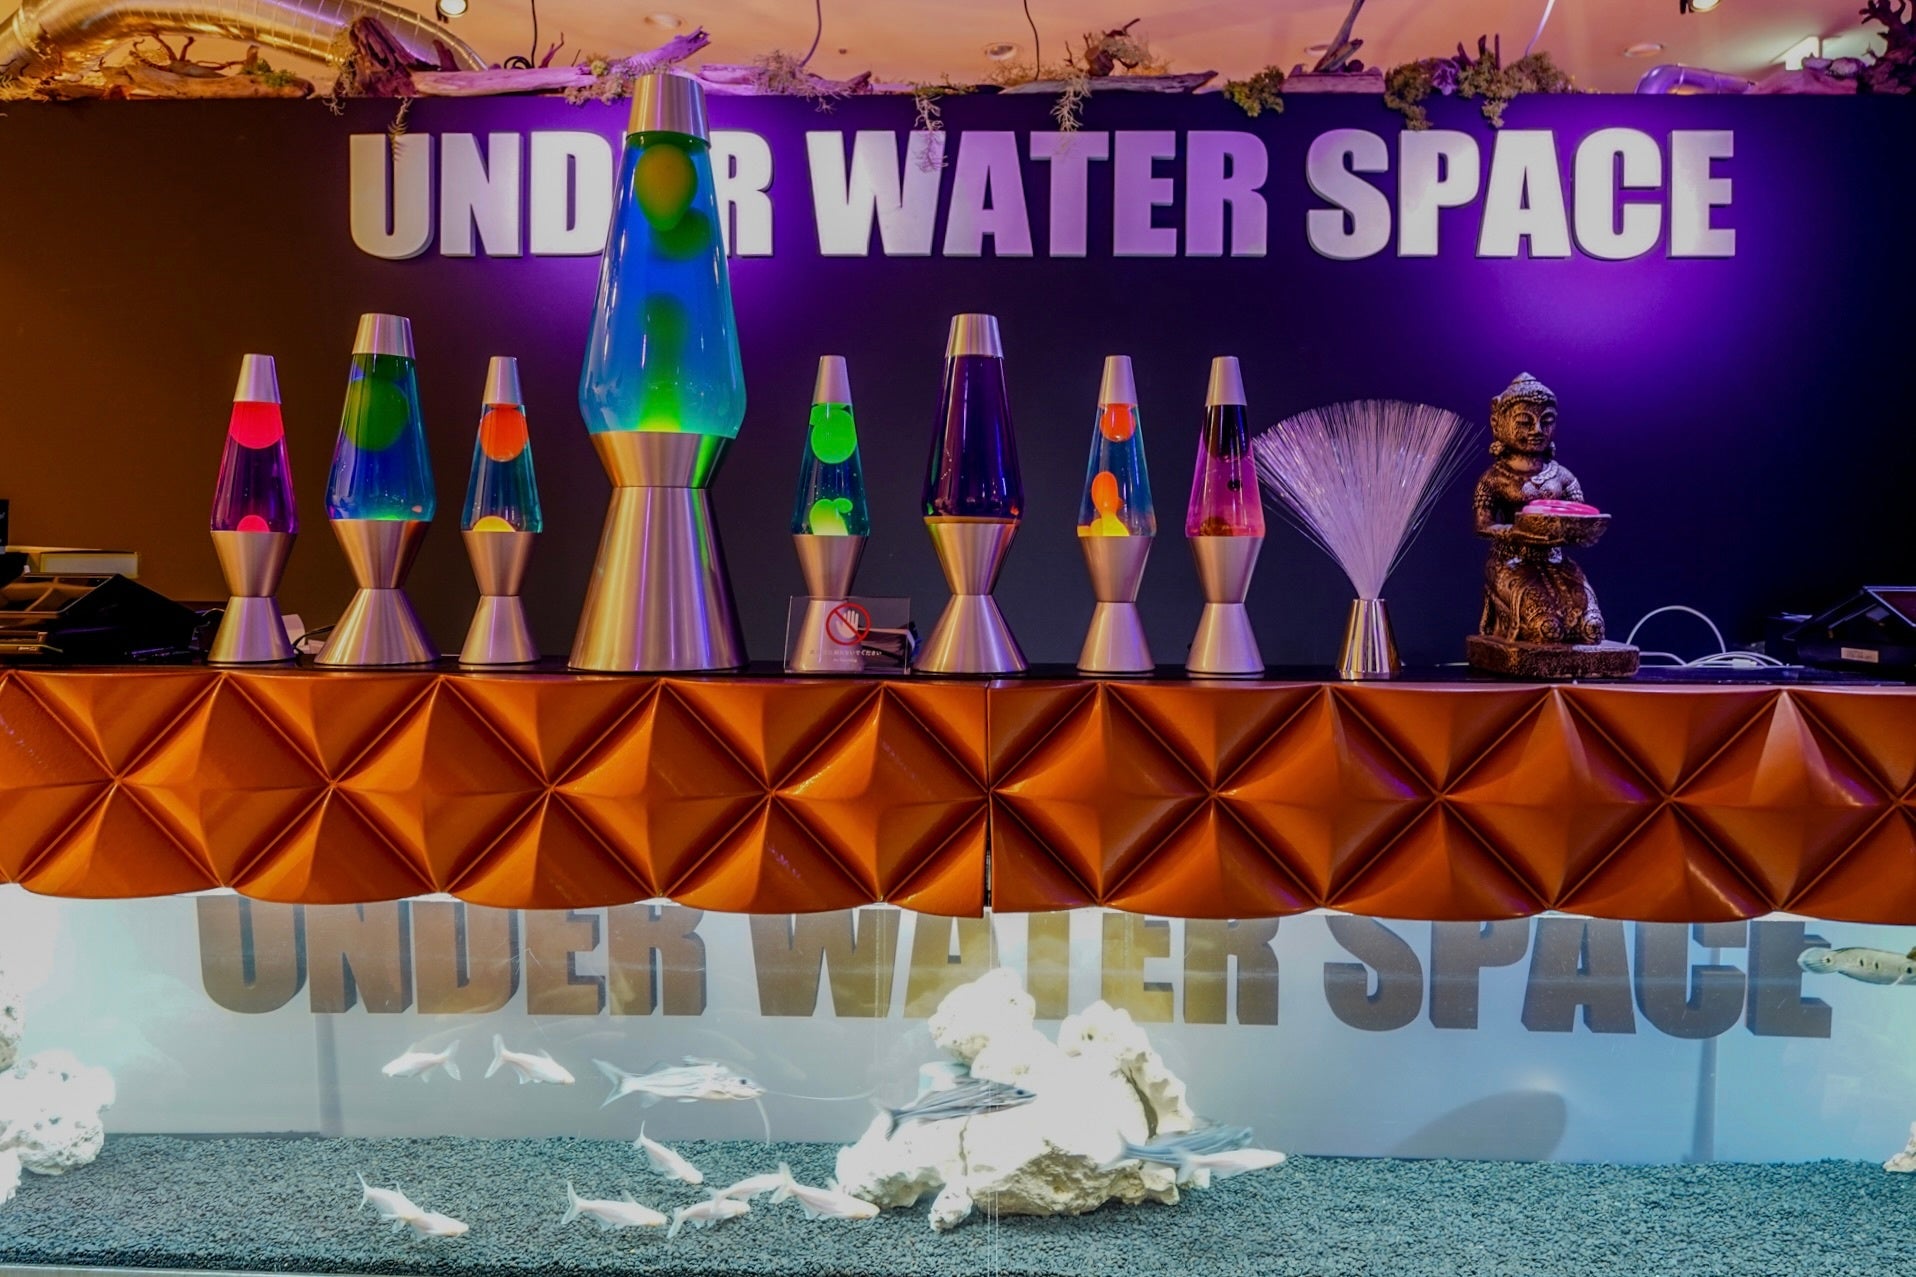 期間限定 「UNDER WATER SPACE NAGOYA」 mozoワンダーシティに明日オープン！宇宙旅行を模した異次元アクアリウムは 新感覚なアート展示に